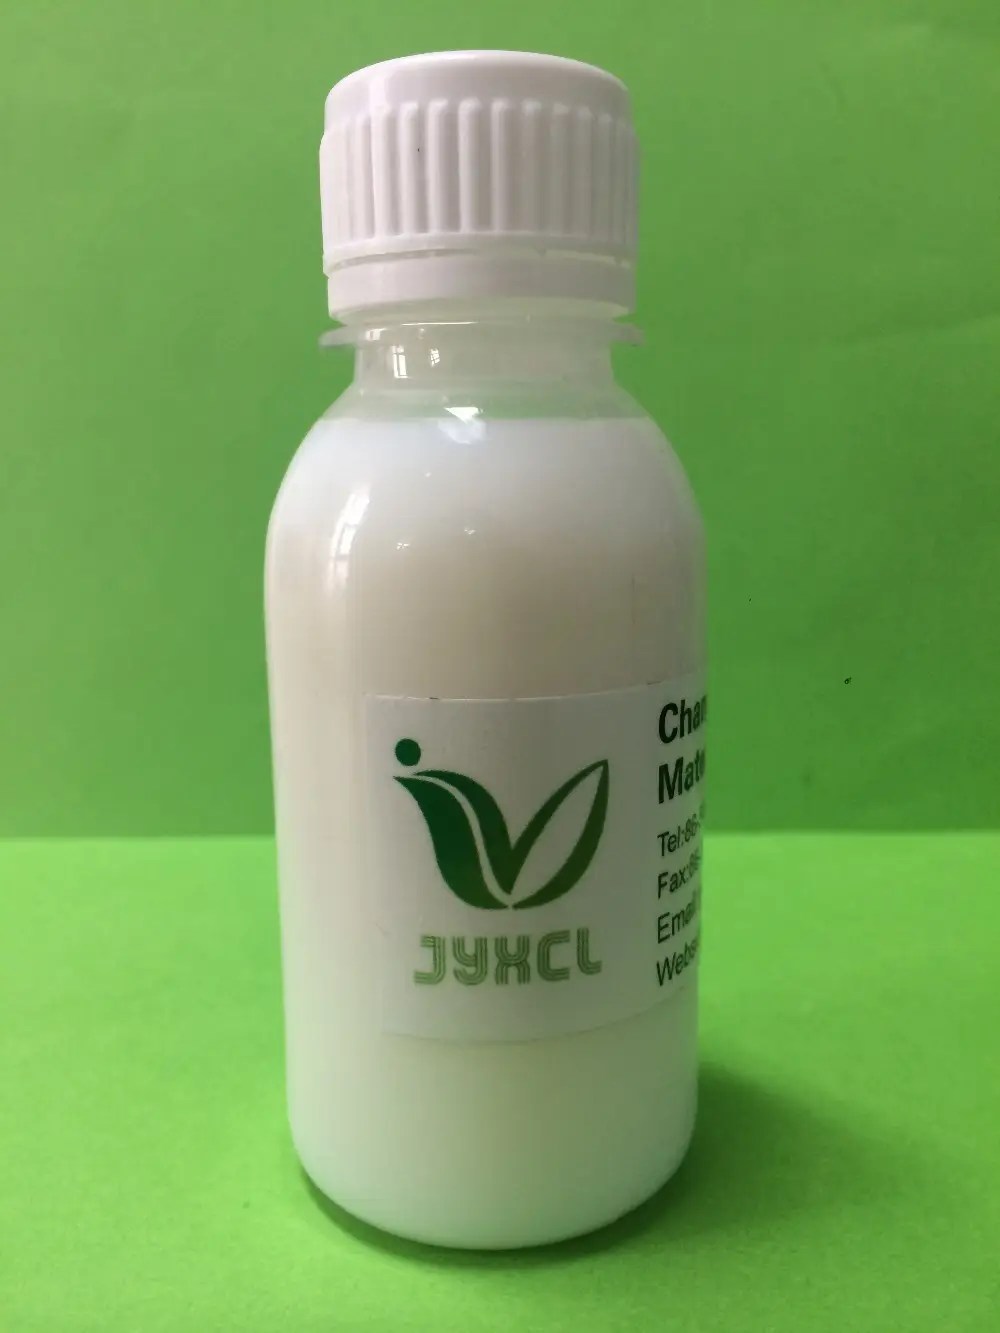 Emulsión JY-2110 de silicona antiespuma para detergente, equivalente a DC 1430